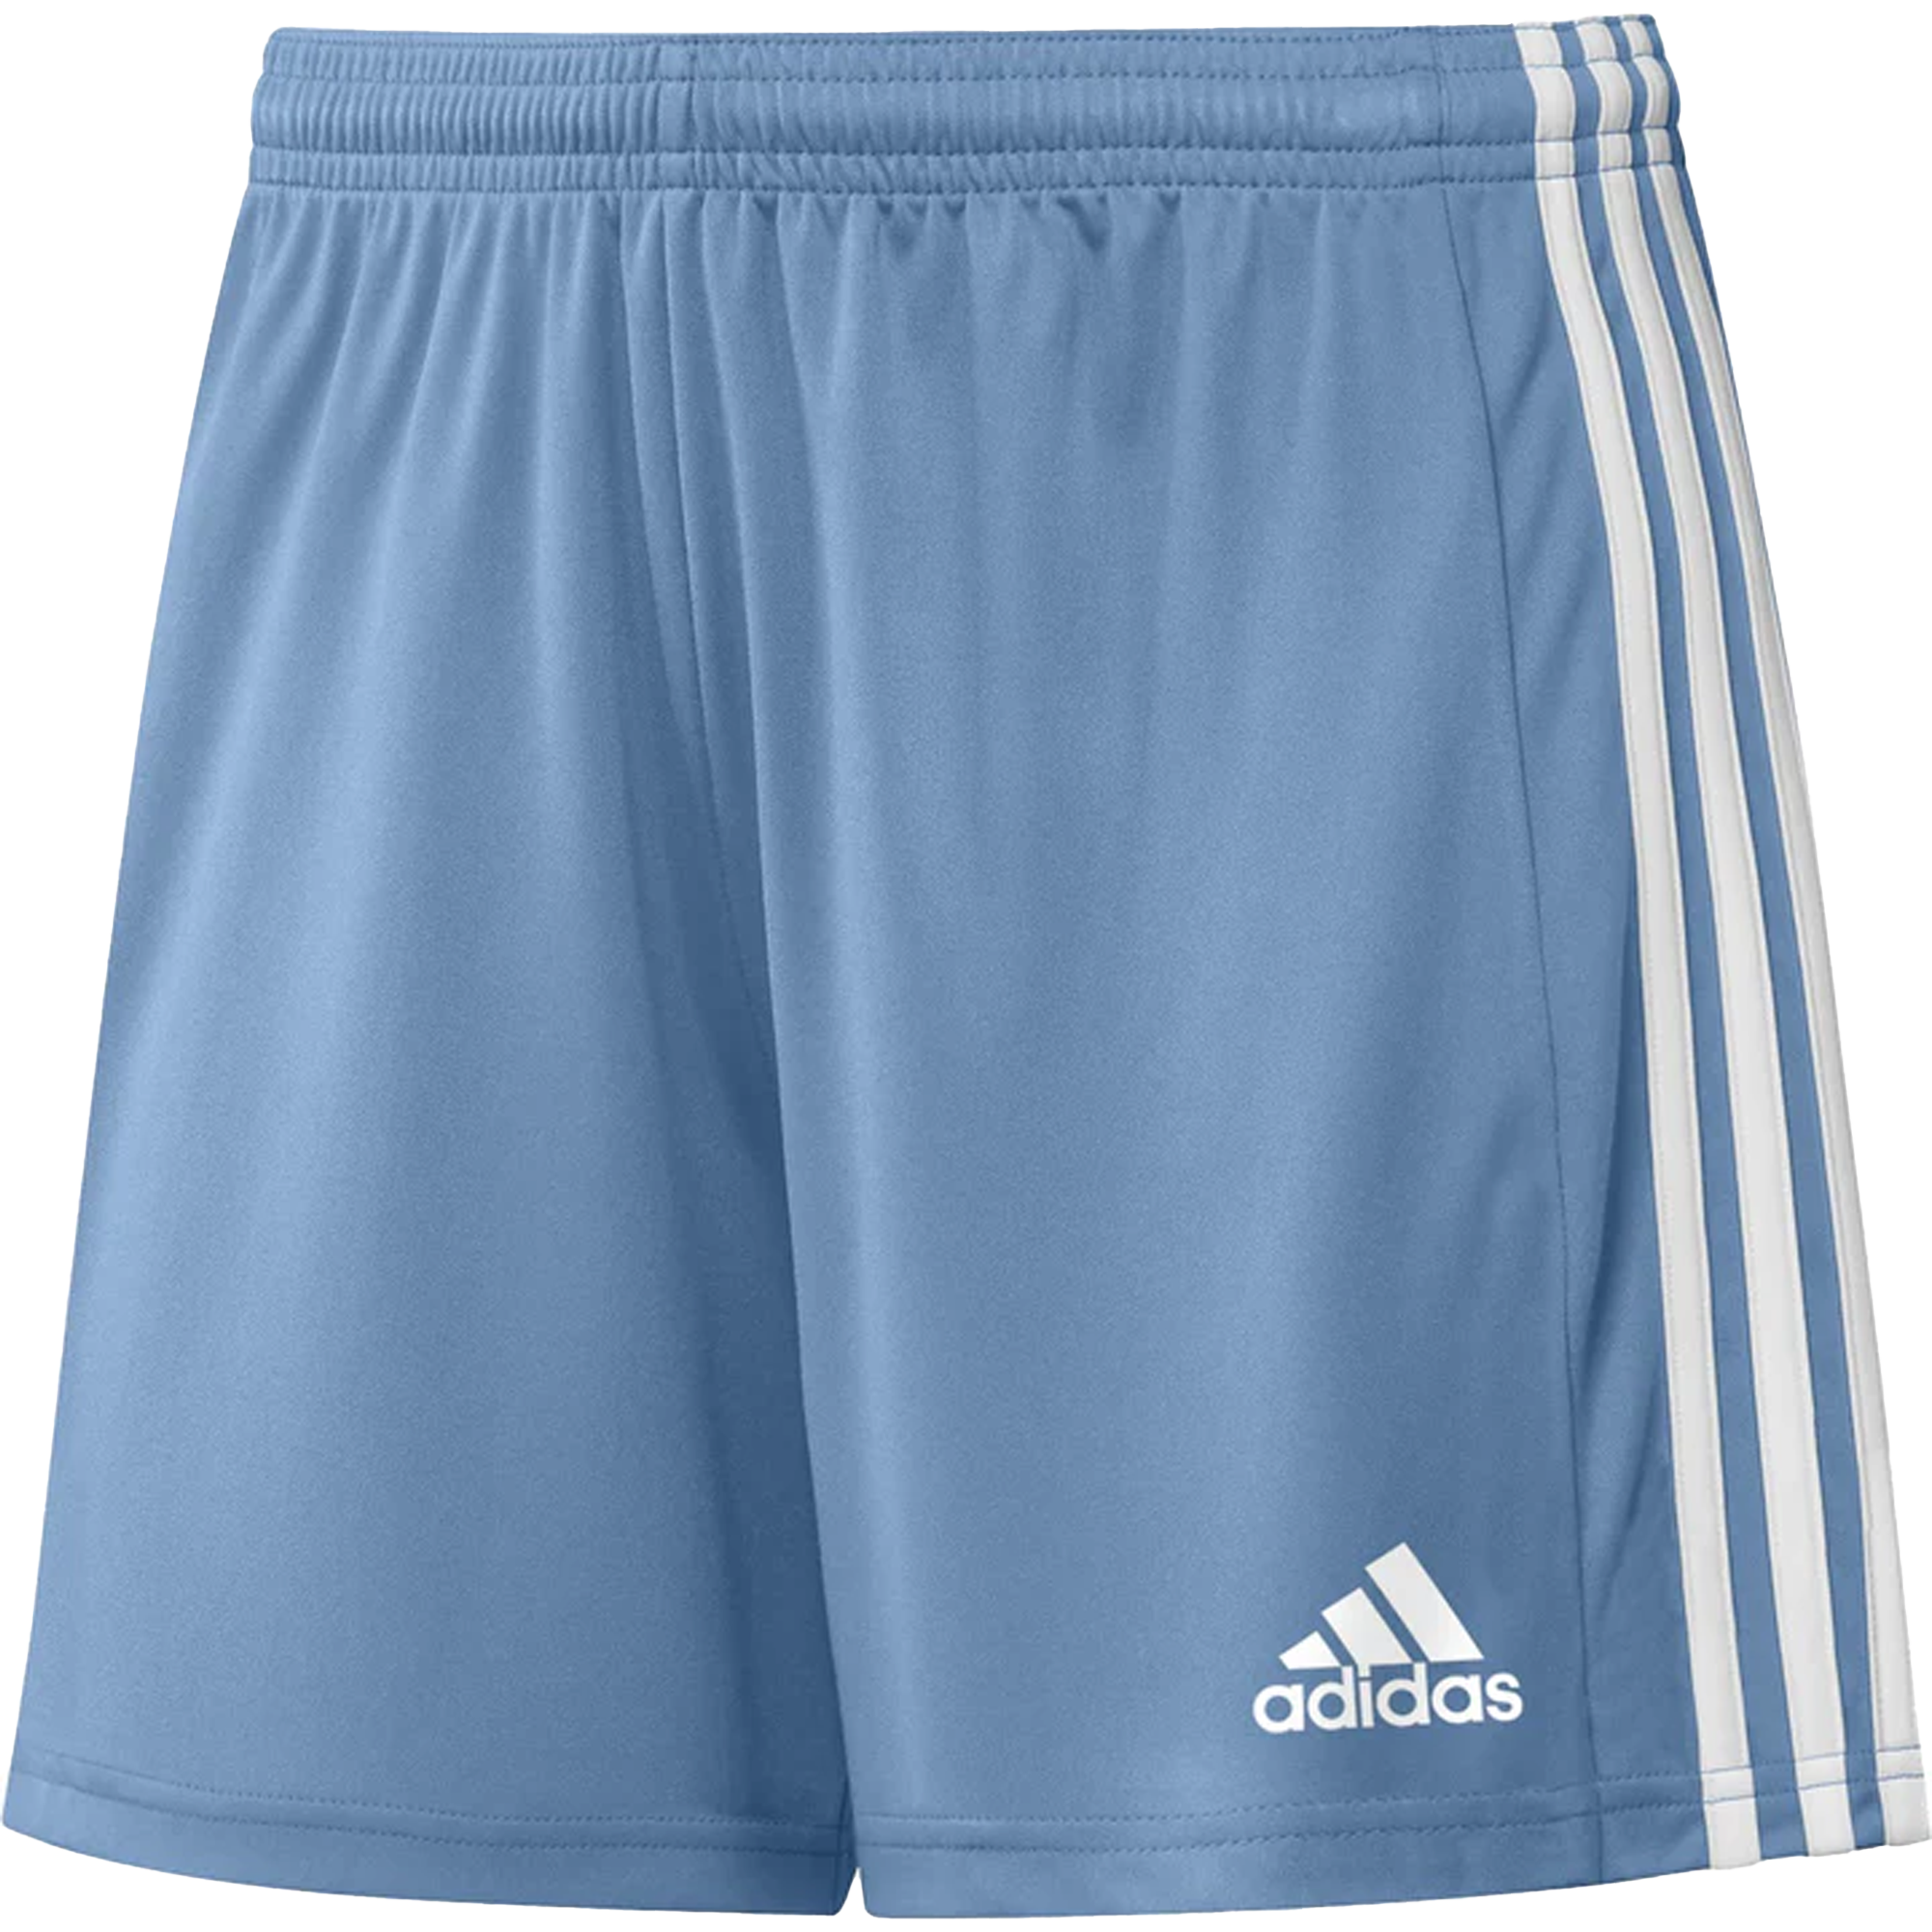 stefanssoccer.com:adidas Squadra 21 Shorts Team Light Blue / White